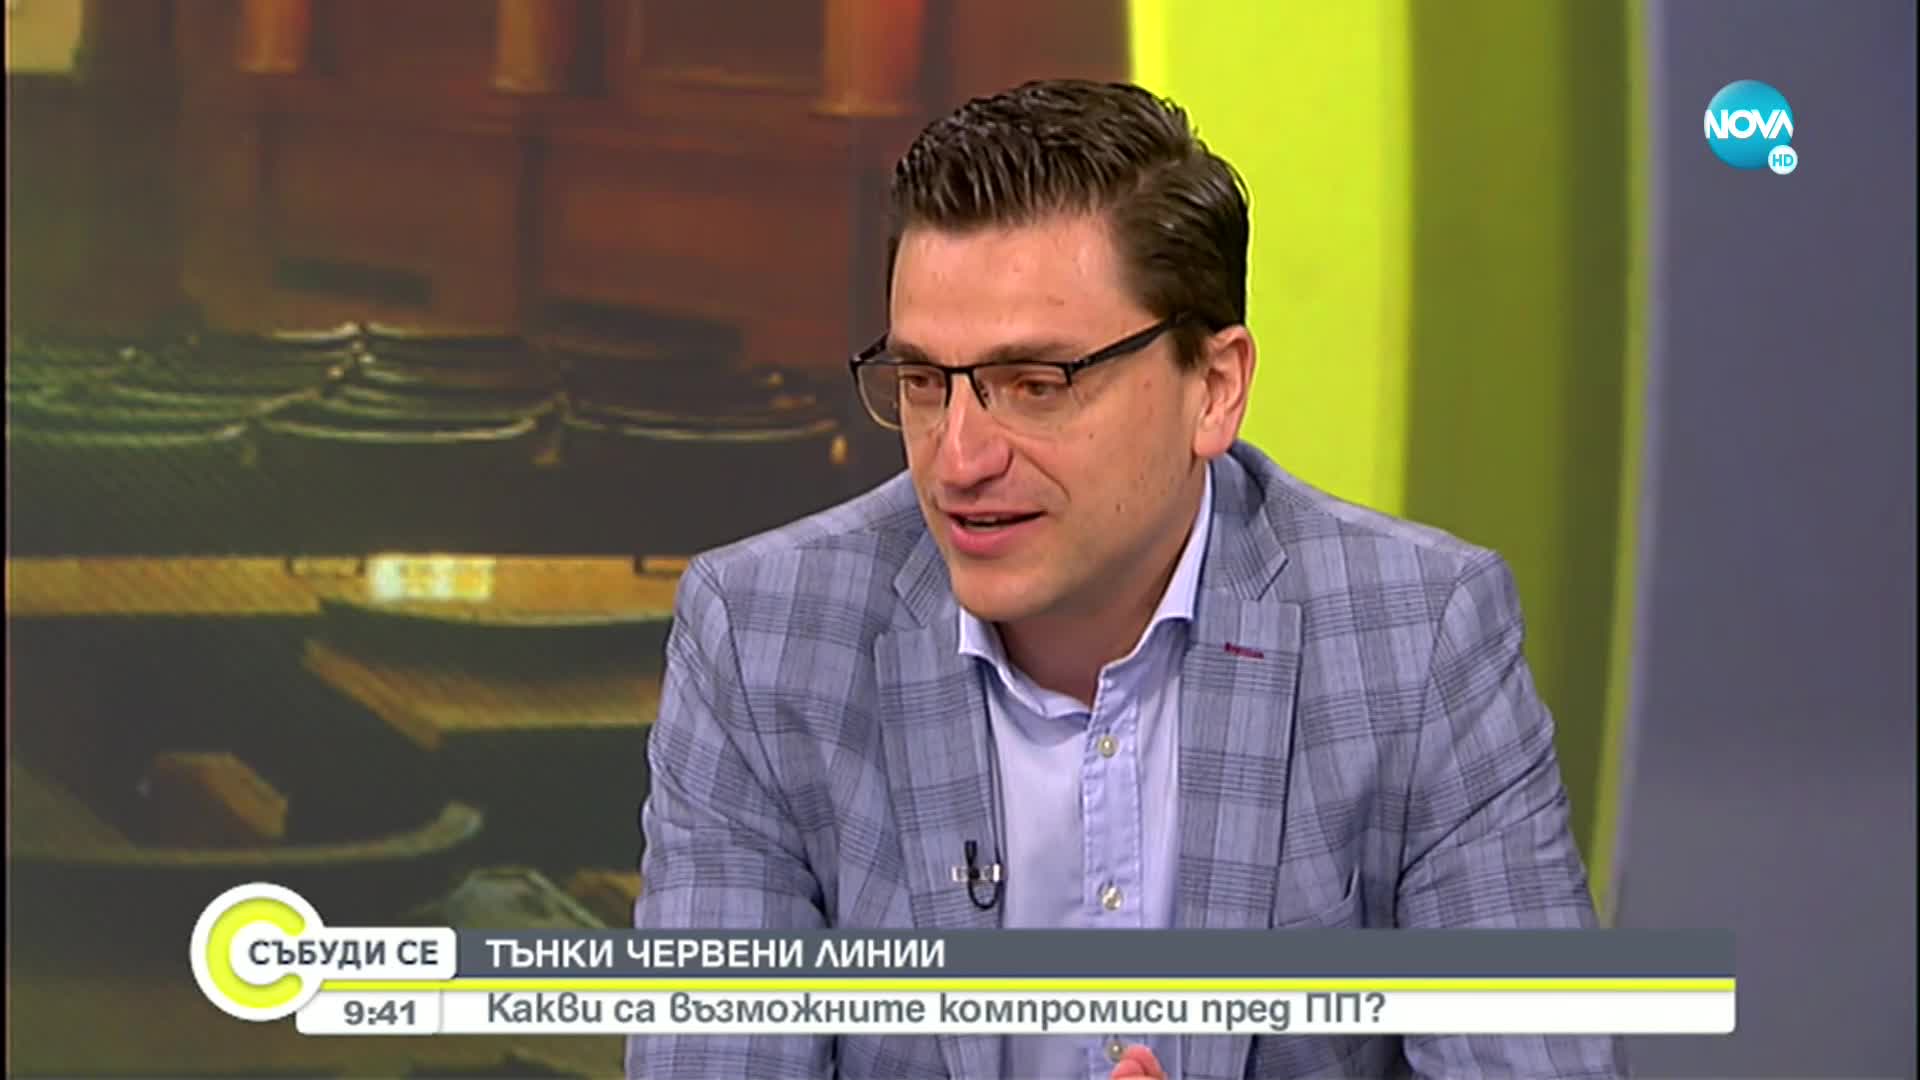 Сабрутев: Има позитивни сигнали за подкрепа на правителството от 121 депутати